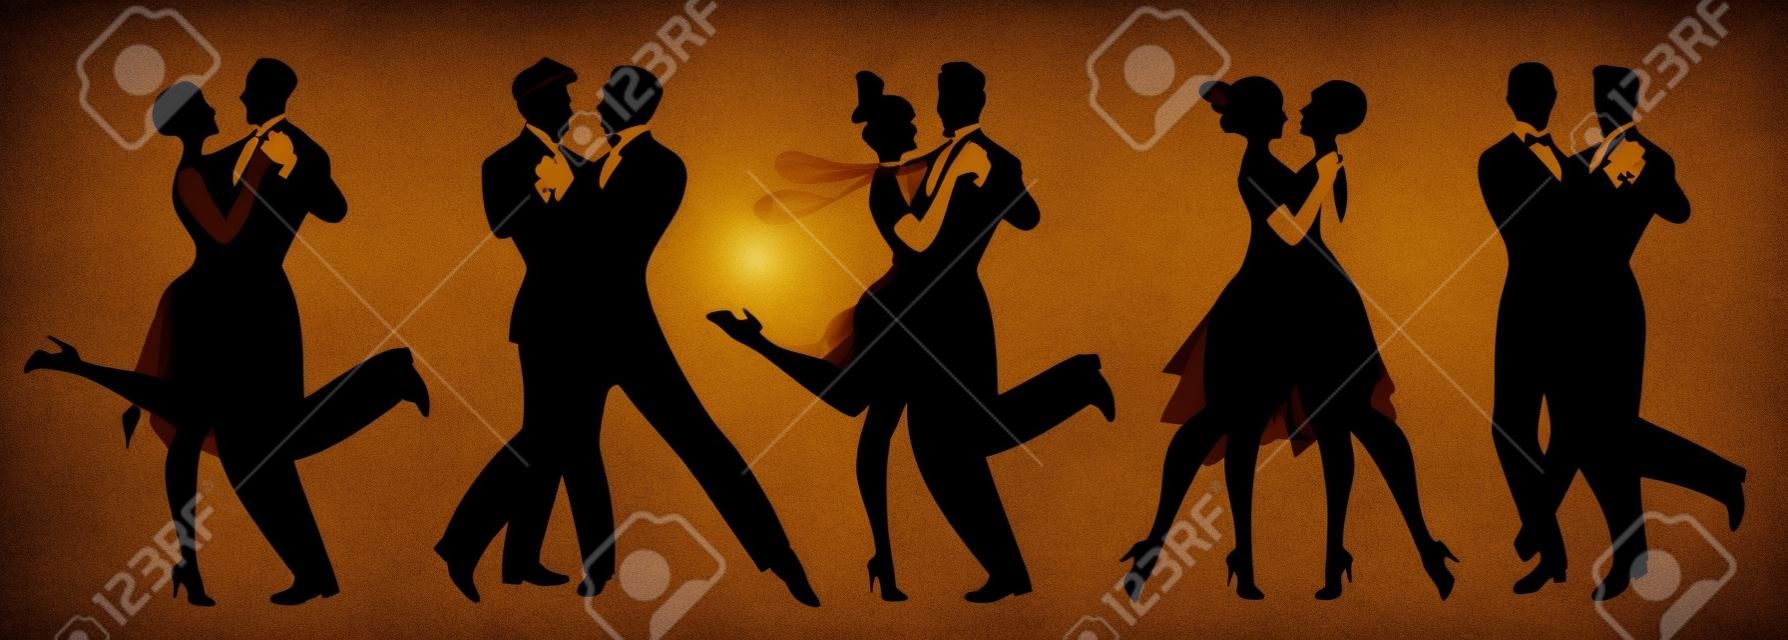 Schattenbilder von fünf Paaren, die Kleidung im Stil der Zwanzigerjahre tanzen Retro- Musik tragen